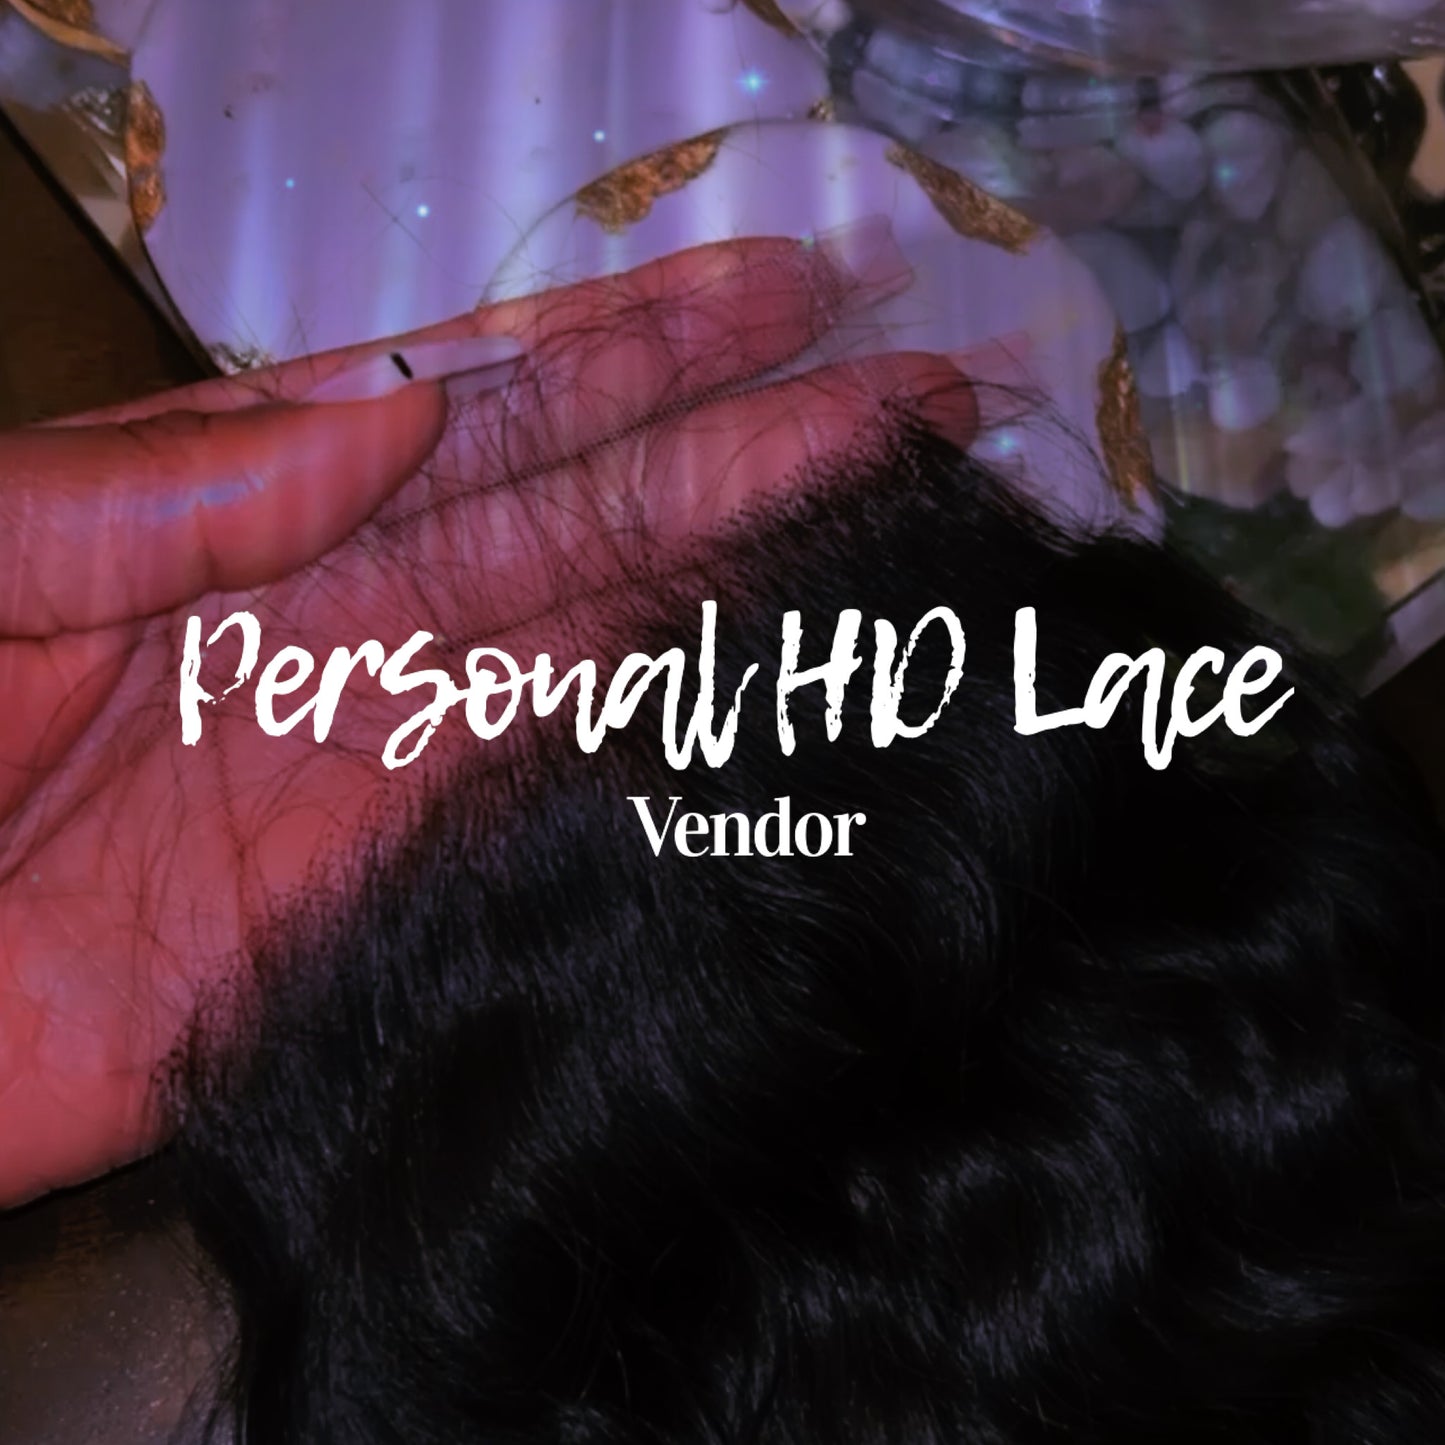 Personal HD Lace Vendor